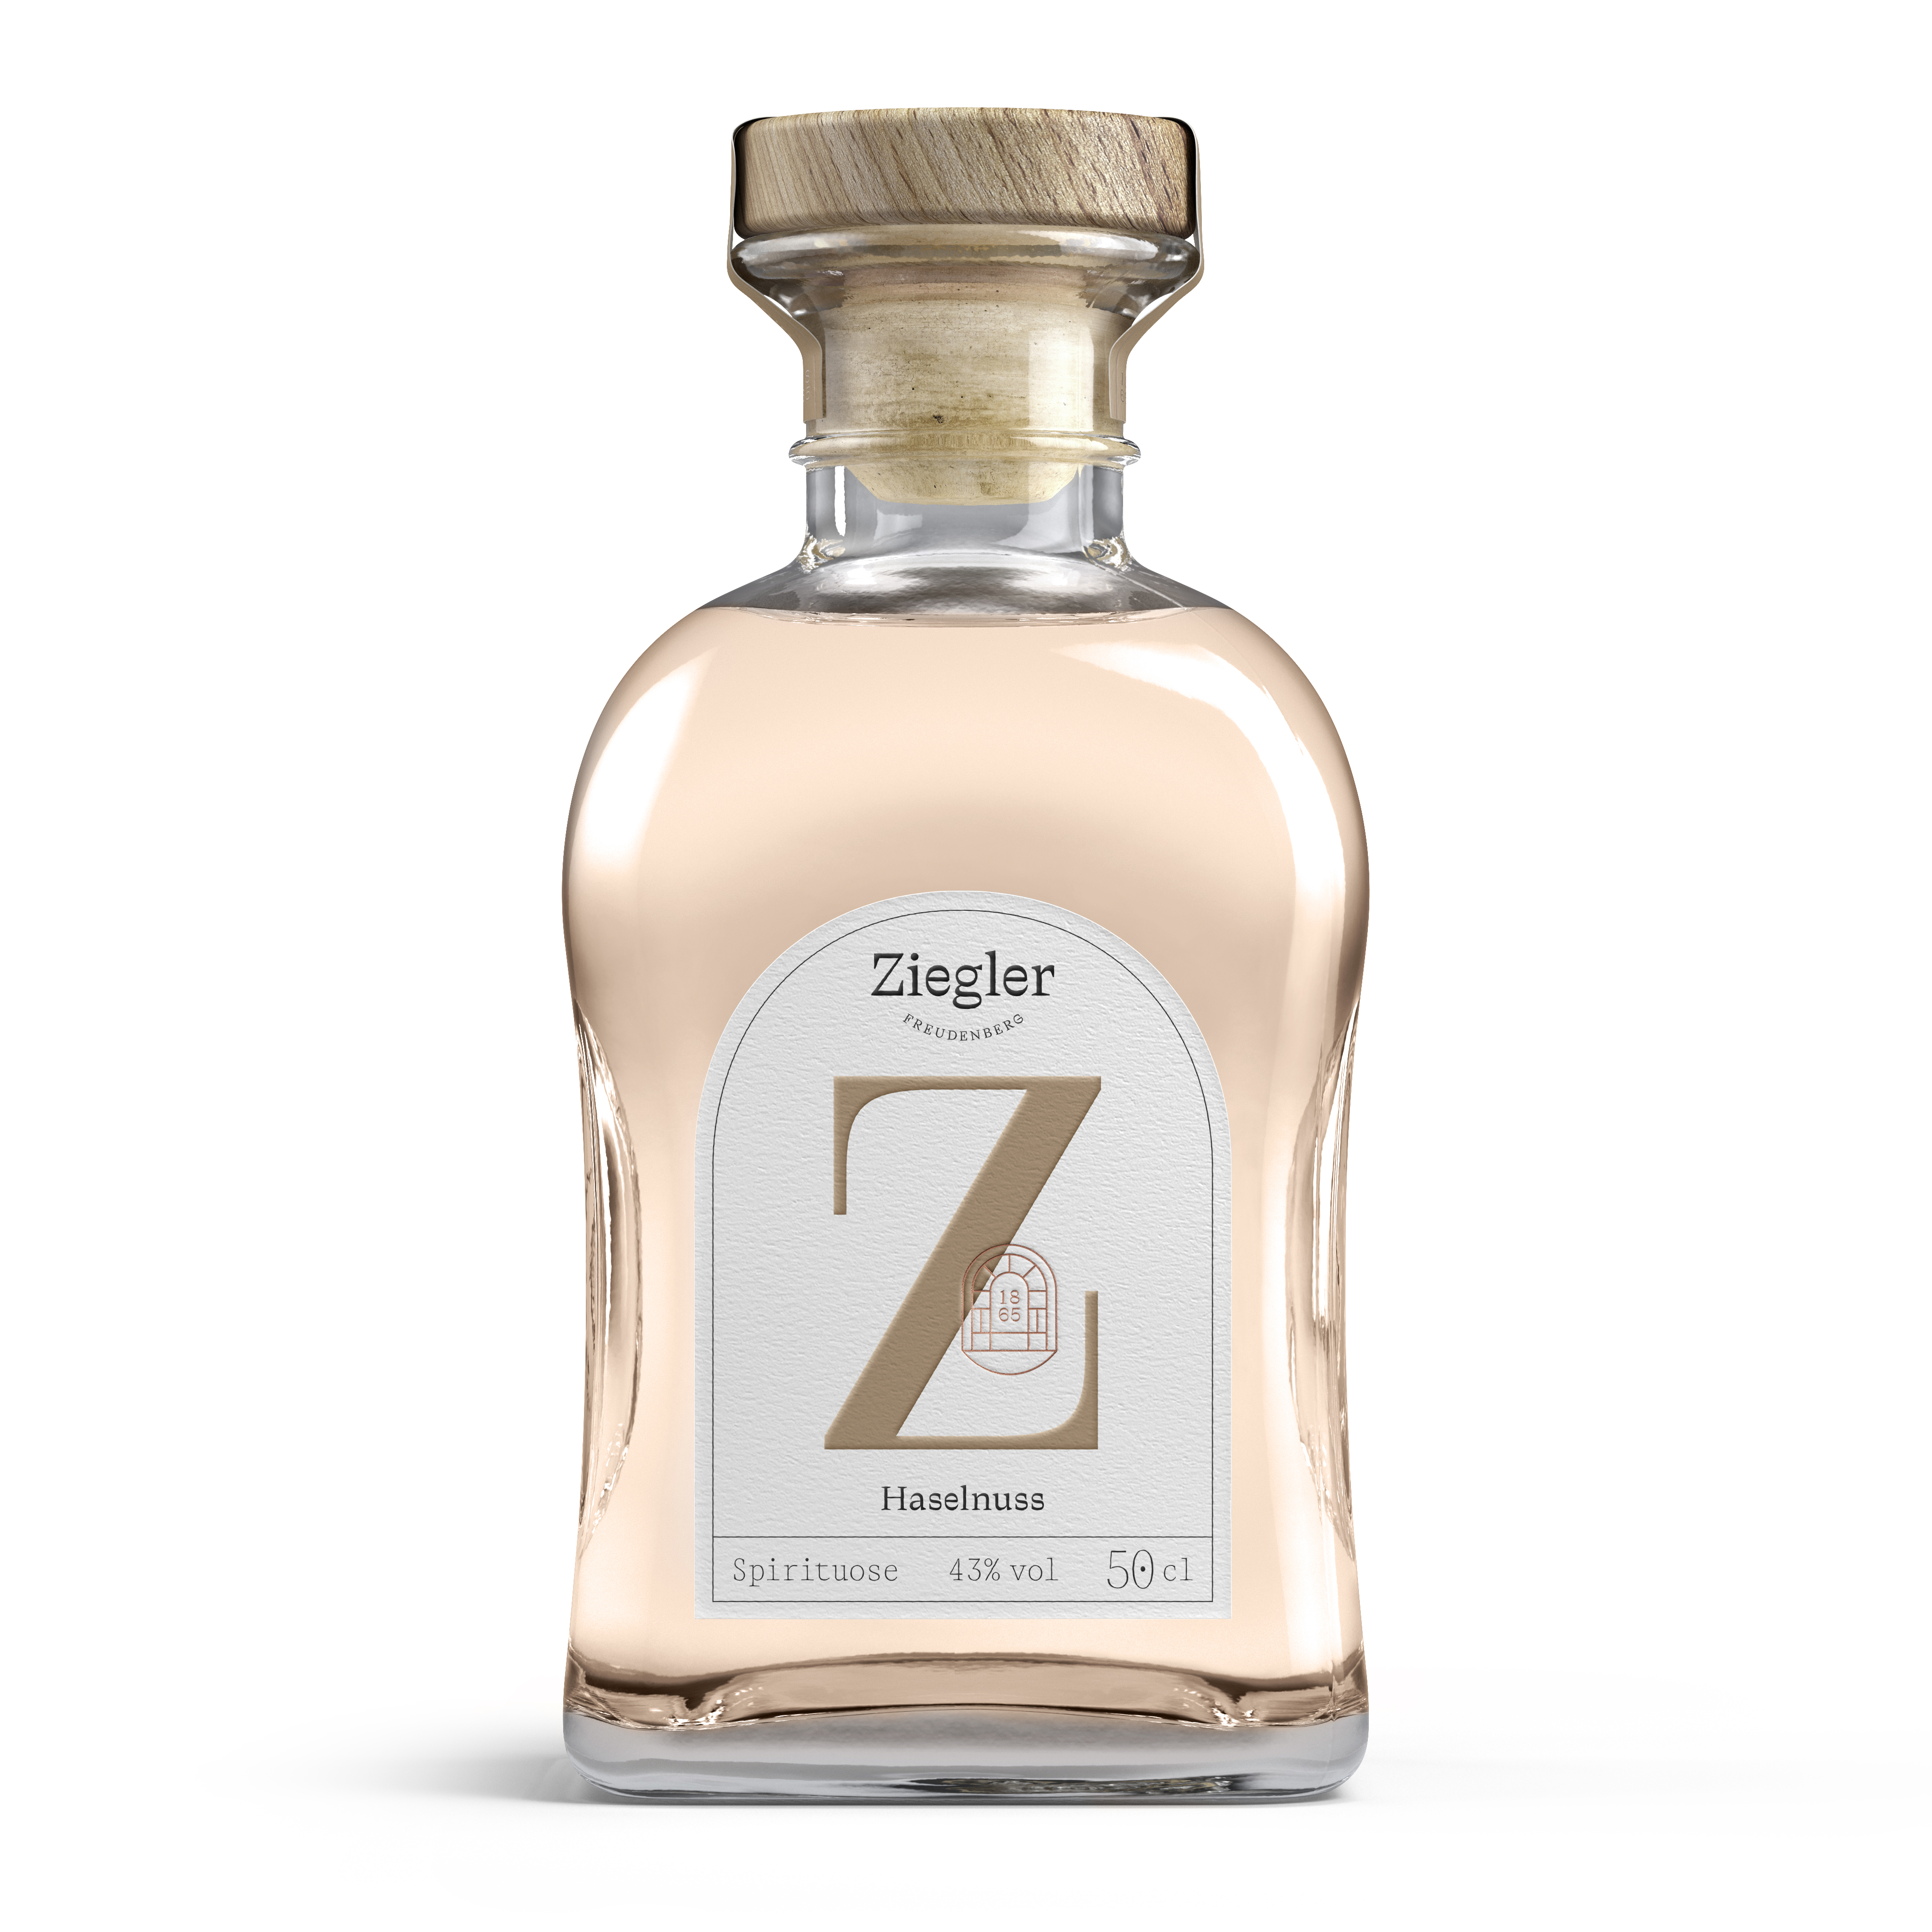 Ziegler Sparset 2 Gastro Bar 43%vol. 2,0l Williams Alte Zwetschge Mirabelle Haselnuss inkl. 2 Ziegler Becher-Gläser